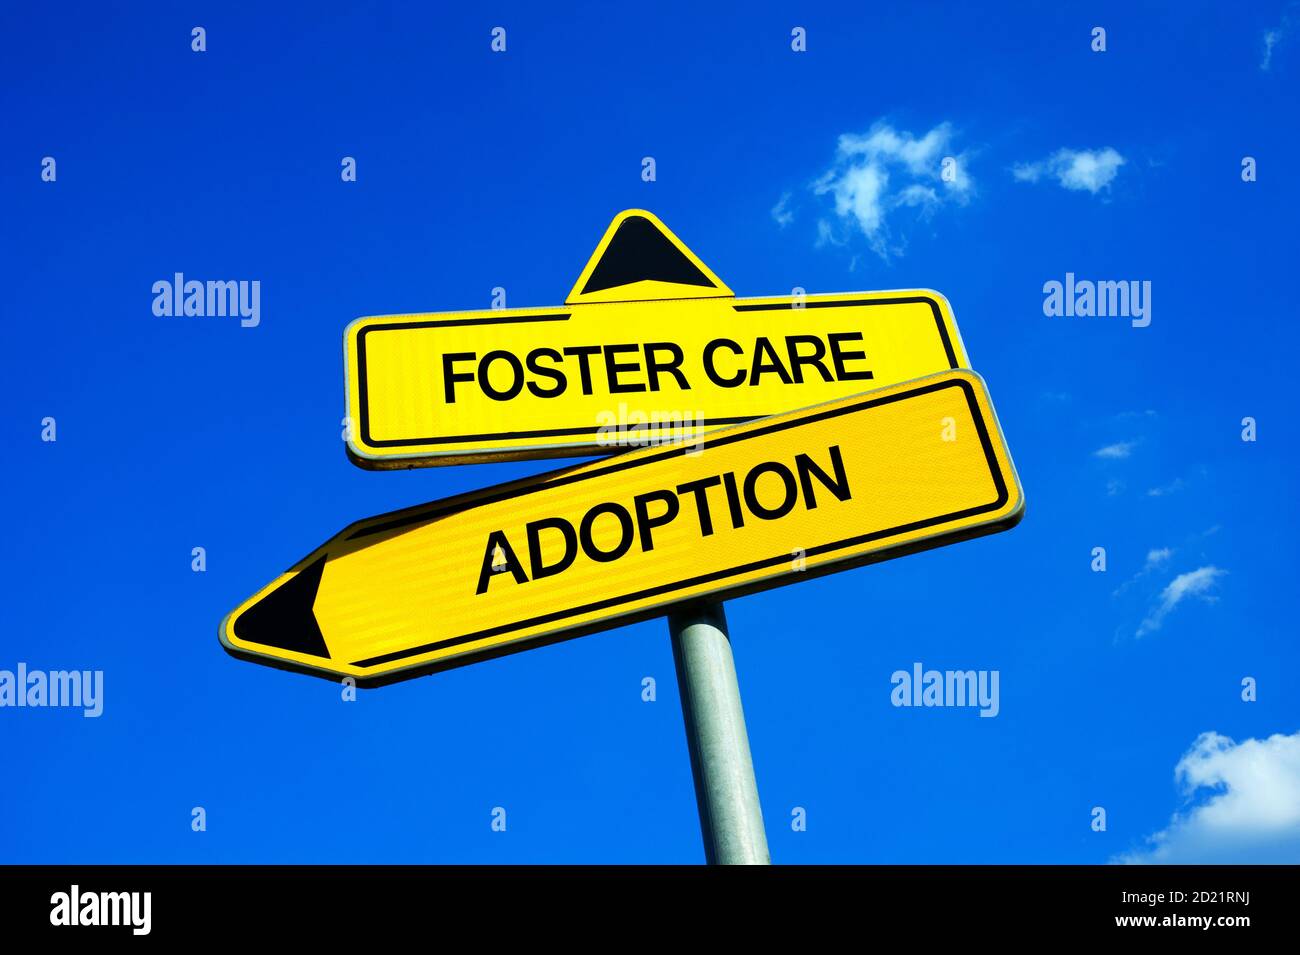 Foster Care oder Adoption - Verkehrszeichen mit zwei Optionen - Vormundschaft und Foster Elternteil vs adoptieren Kind und Kind häusliche Beziehung zwischen min Stockfoto